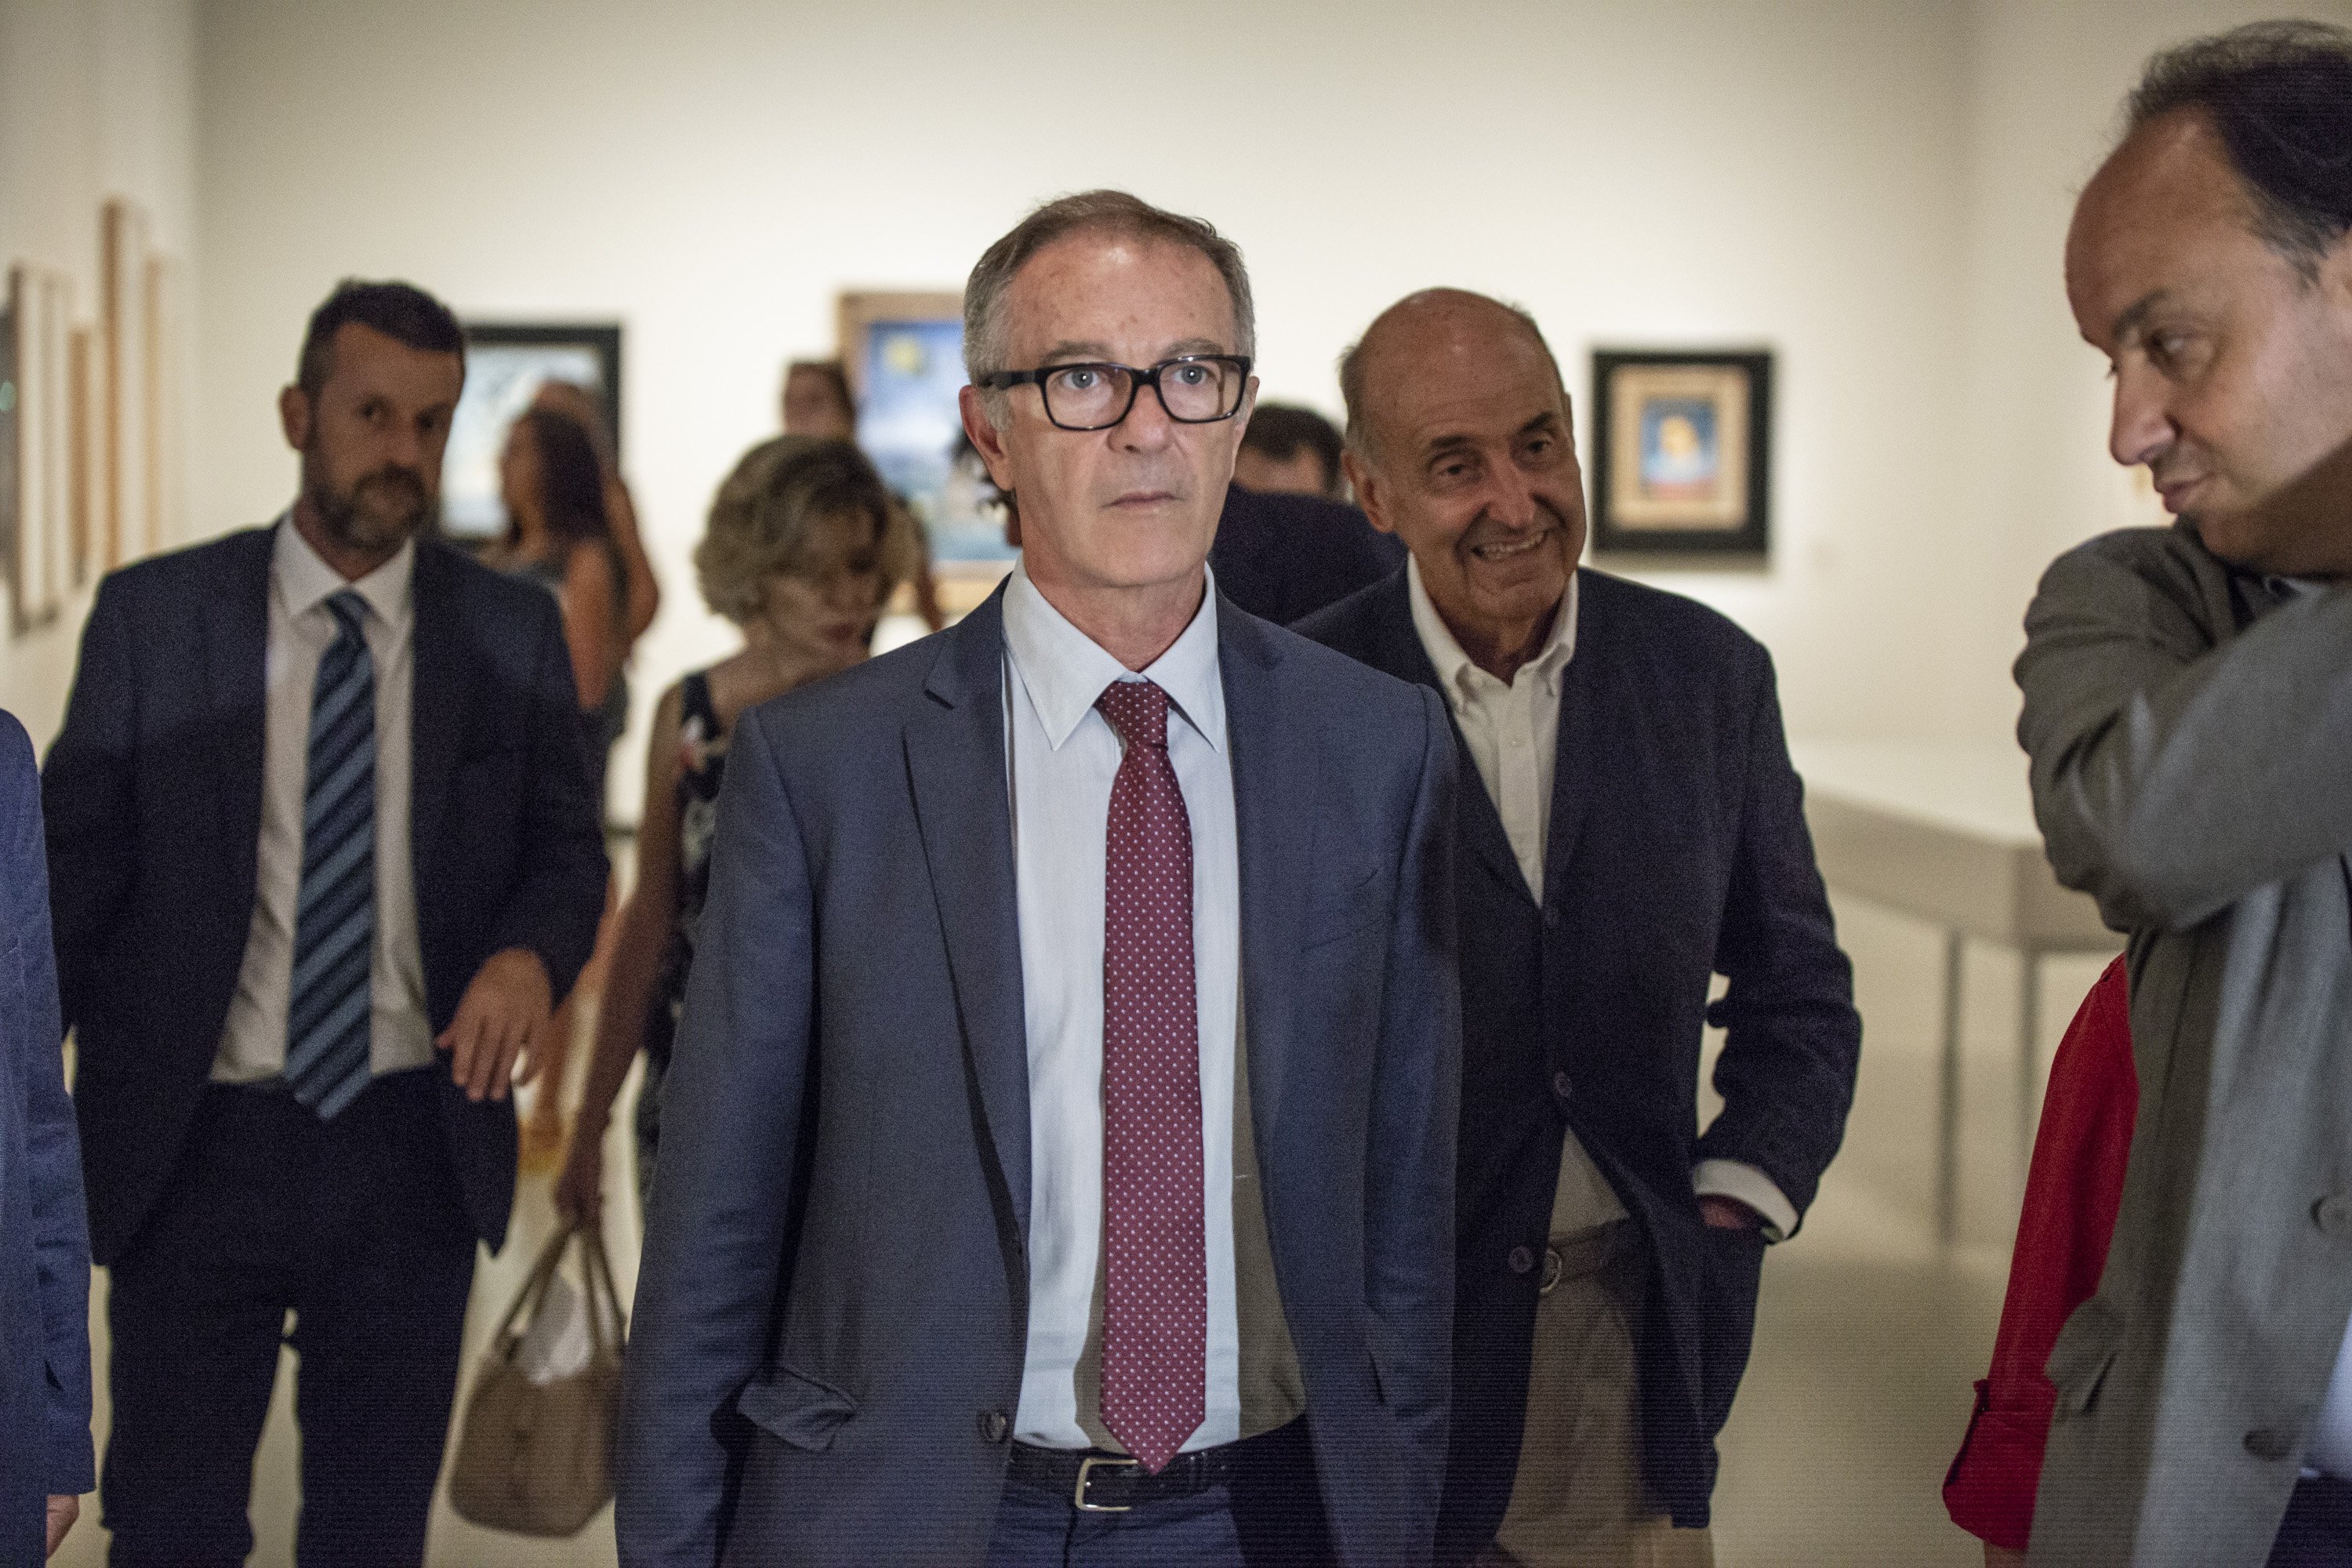 El ministro de Cultura, sobre Valtònyc: "Los artistas tienen un límite, que son las leyes"